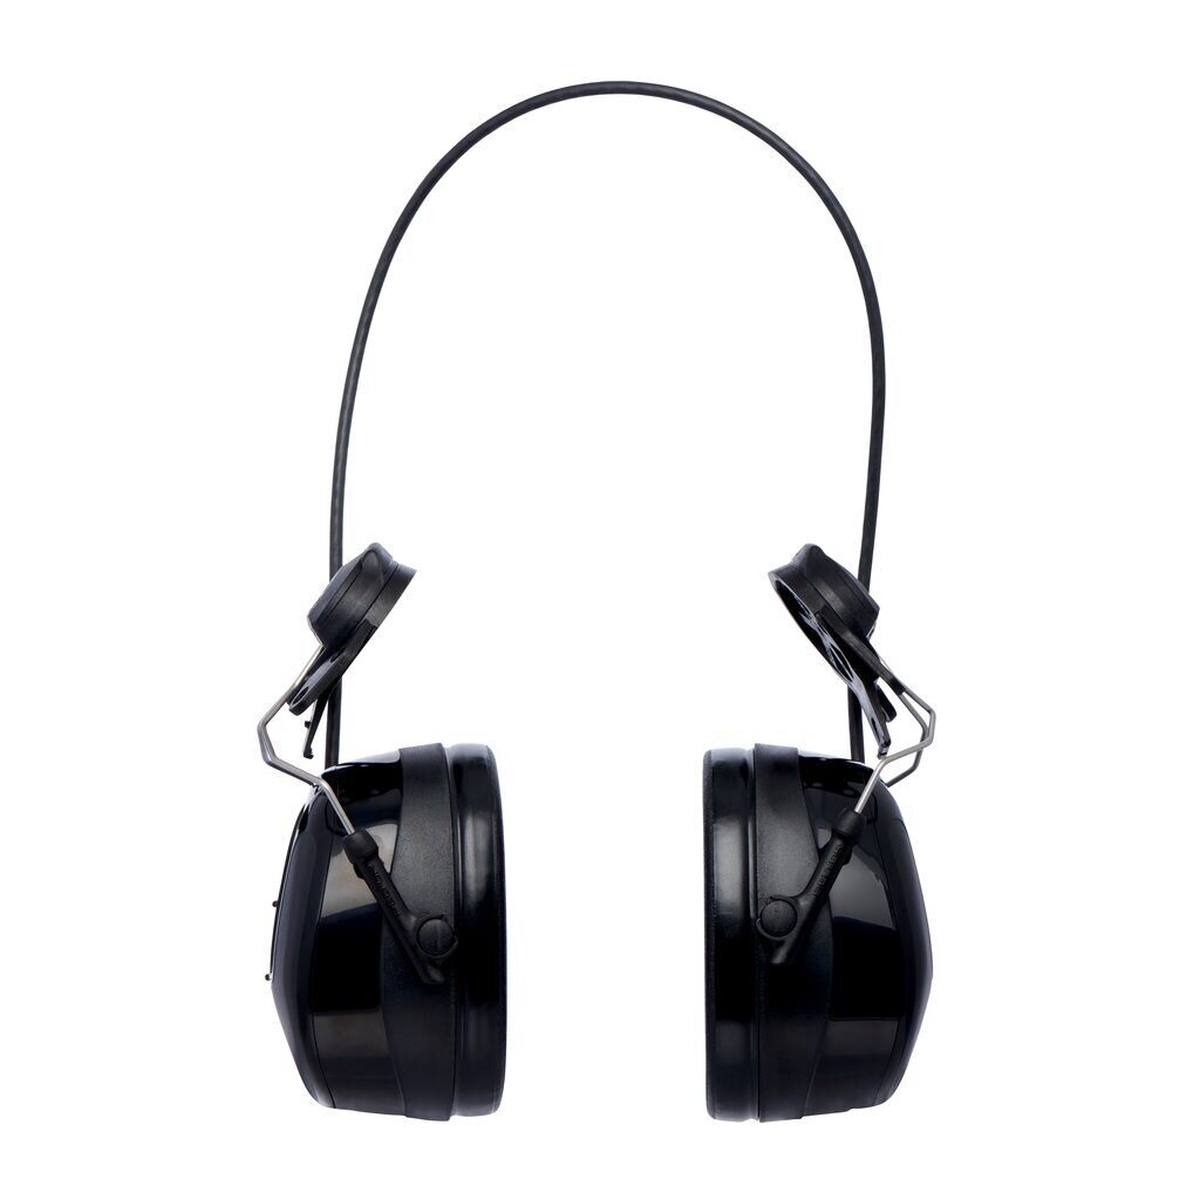 3M Peltor WorkTunes Pro Auriculares de protección auditiva con radio FM, fijación para casco, negro